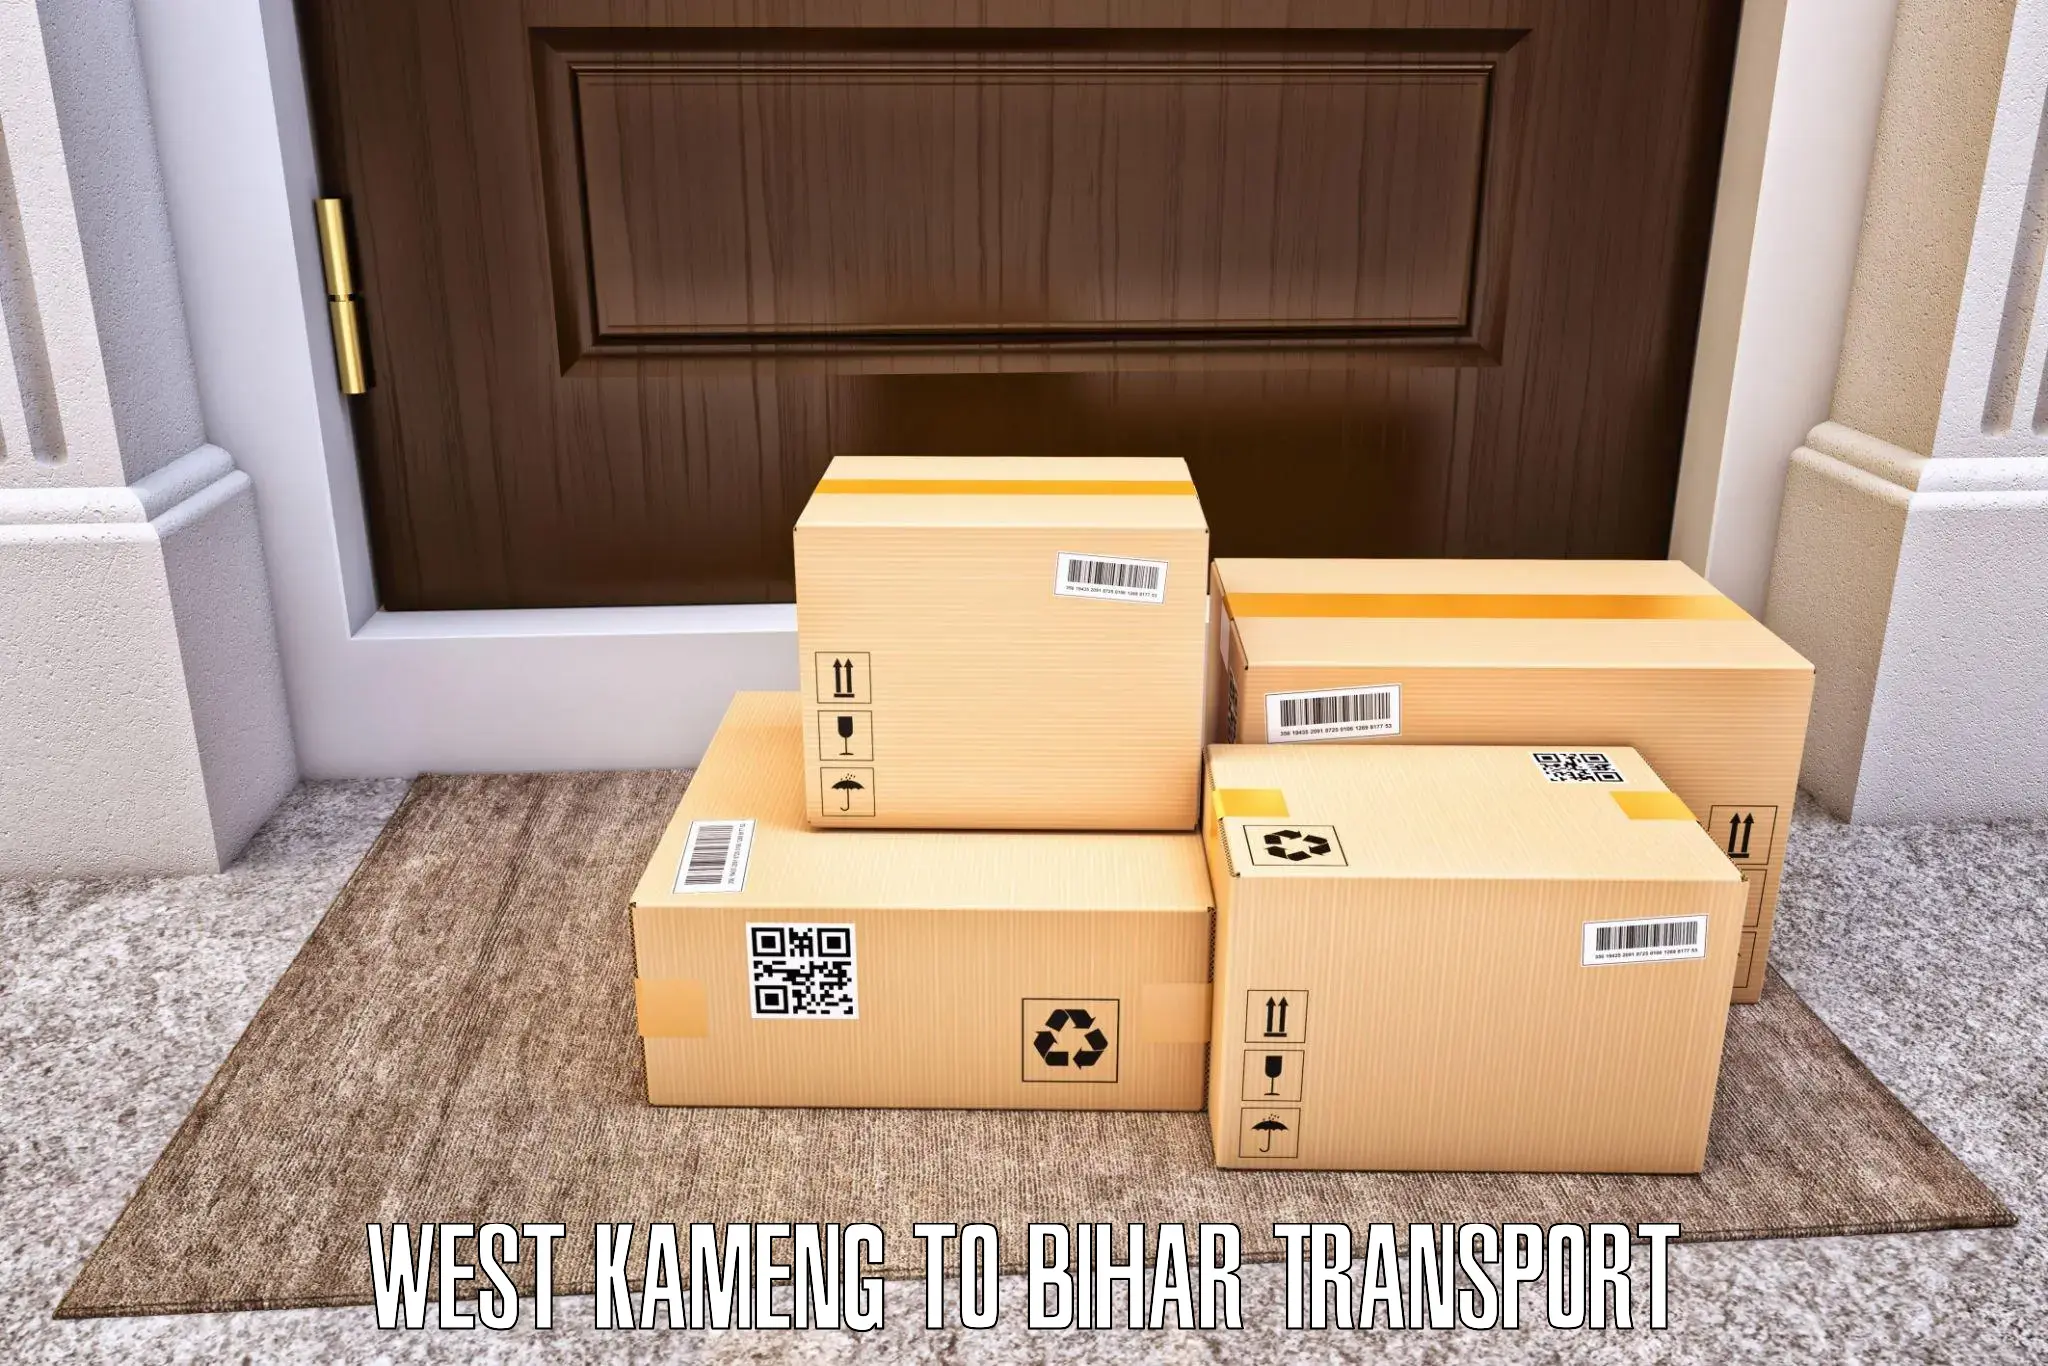 Online transport service West Kameng to Imamganj